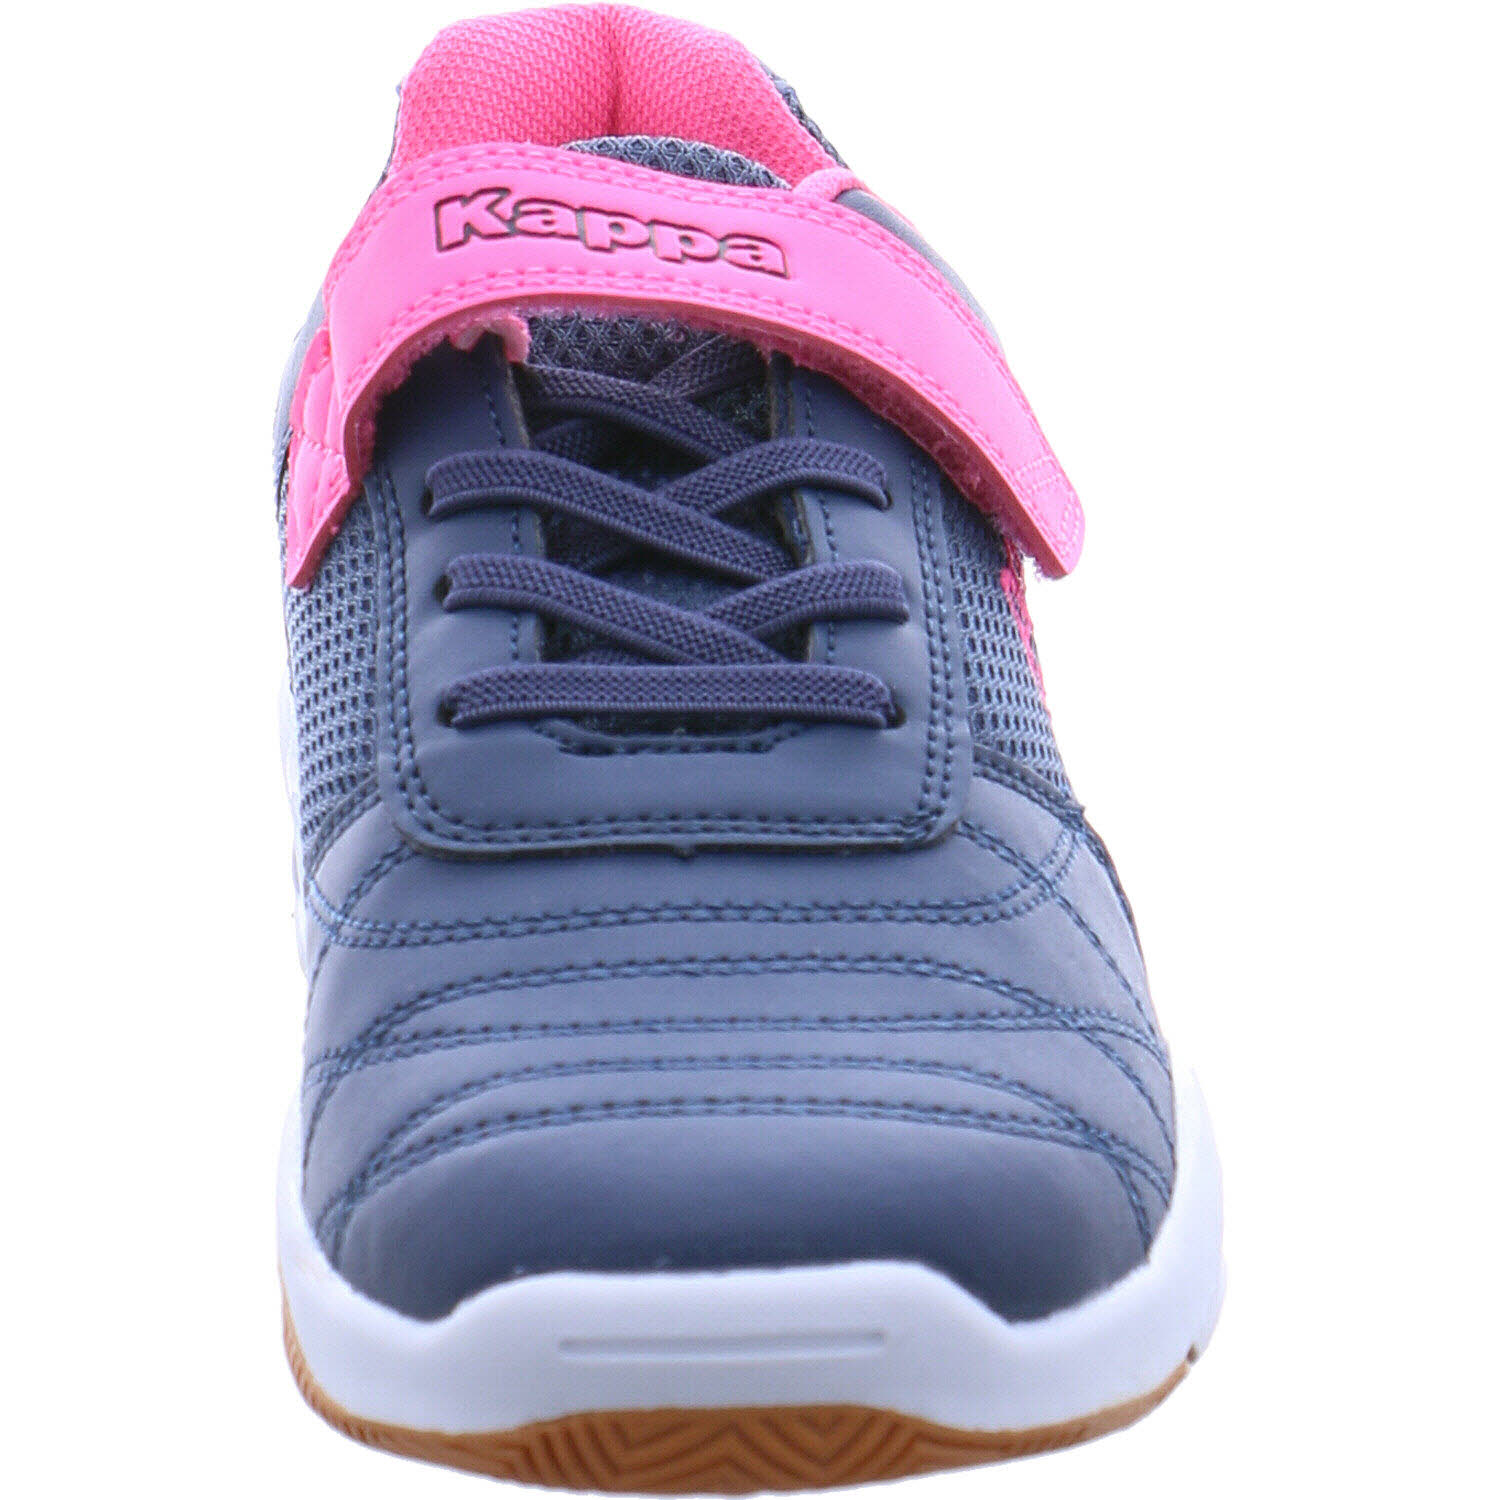 Hallenschuh K für MF II MFK 260819 Mädchen in blau/pink | Kappa Shoes Droum Stylecode: P&P